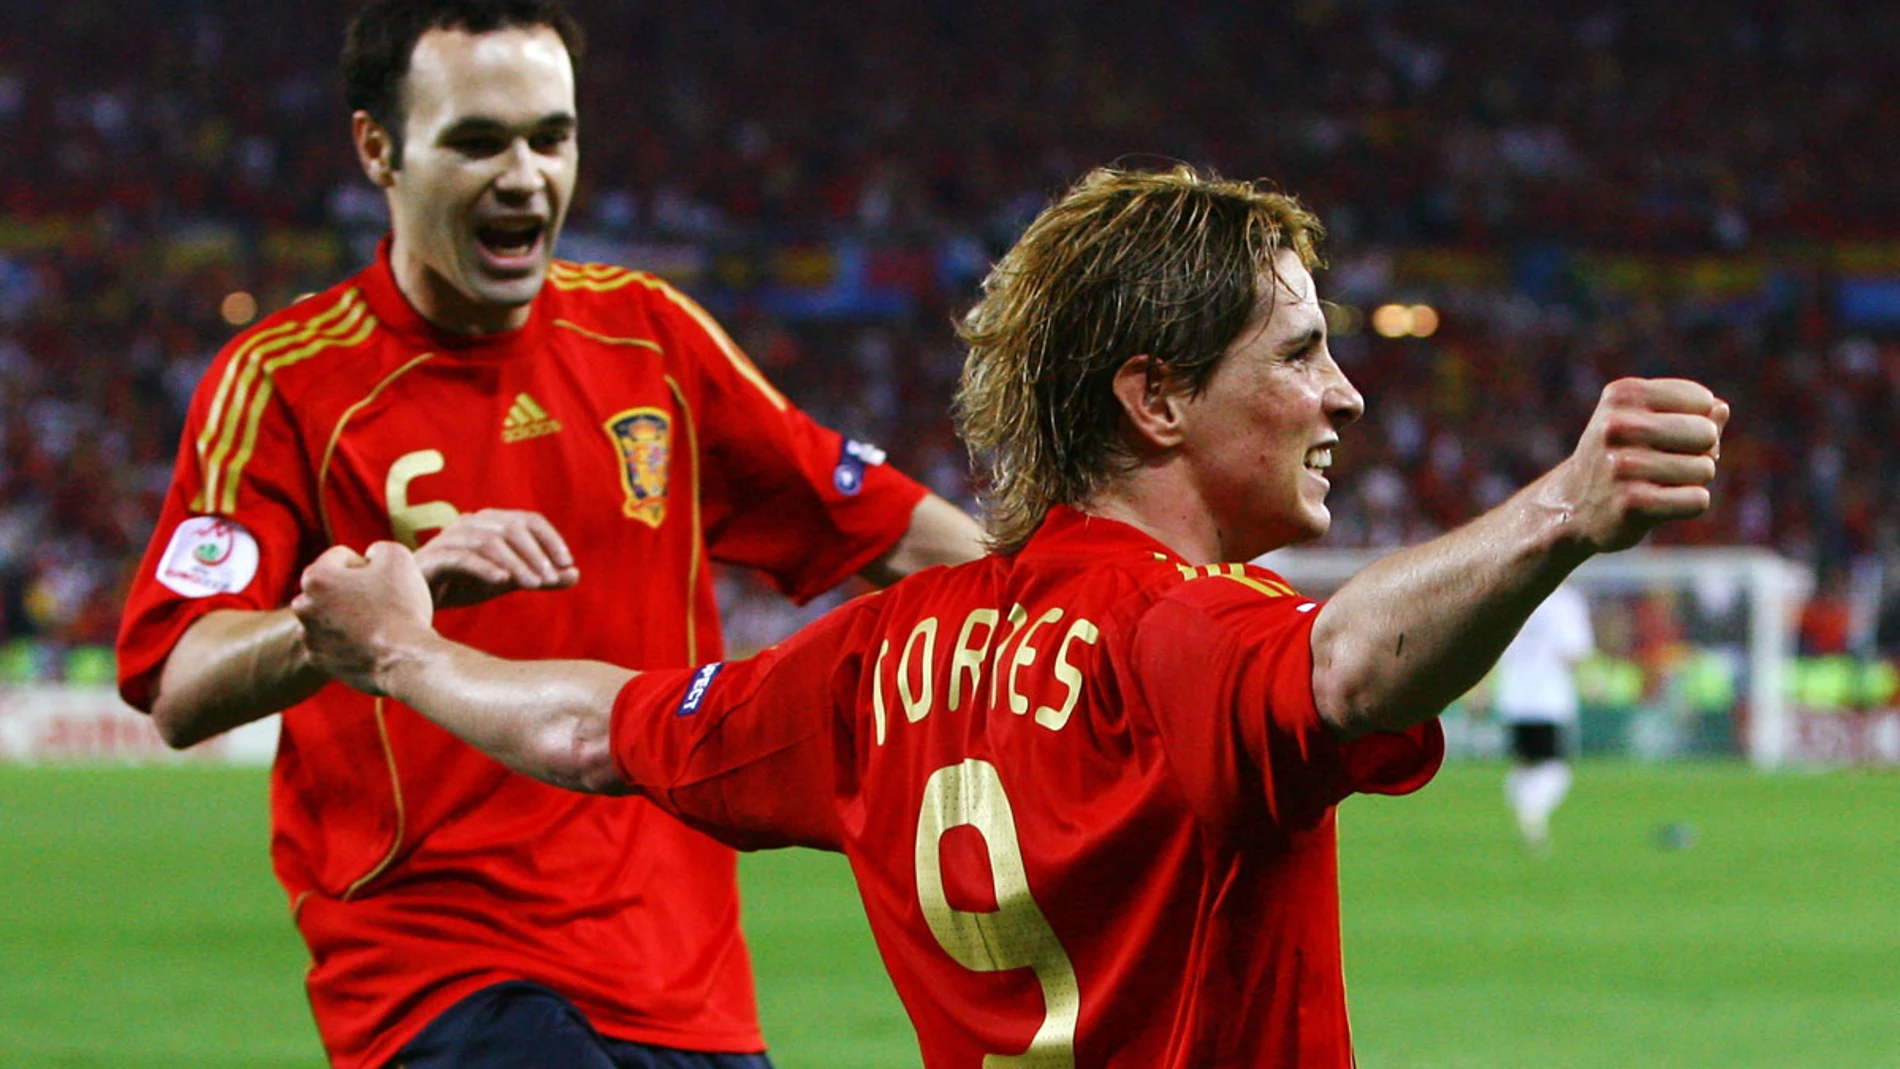 Iniesta celebra con Torres un gol histórico